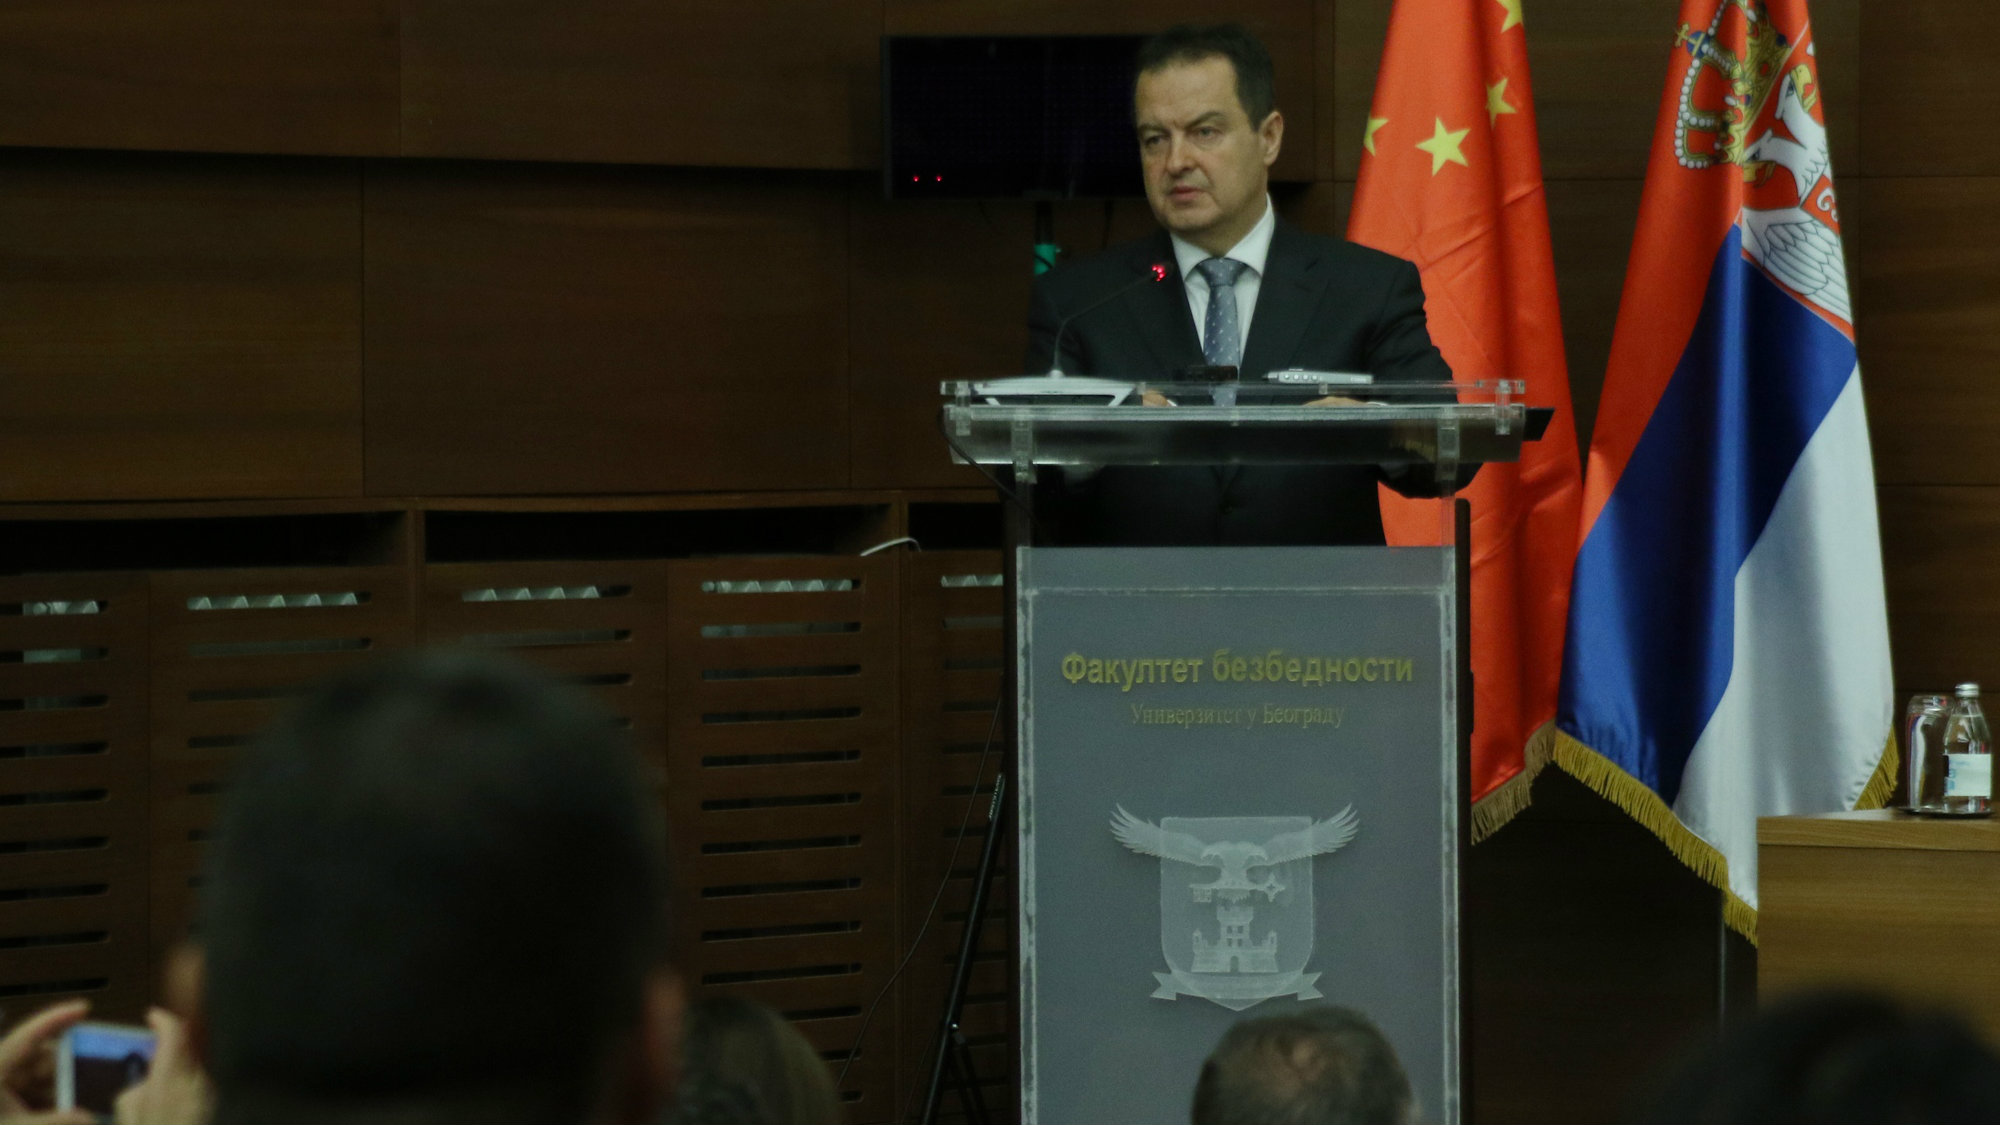 Dačić: Srbja pridaje veliki značaj saradnji sa Kinom i inicijativi Pojas i put 1